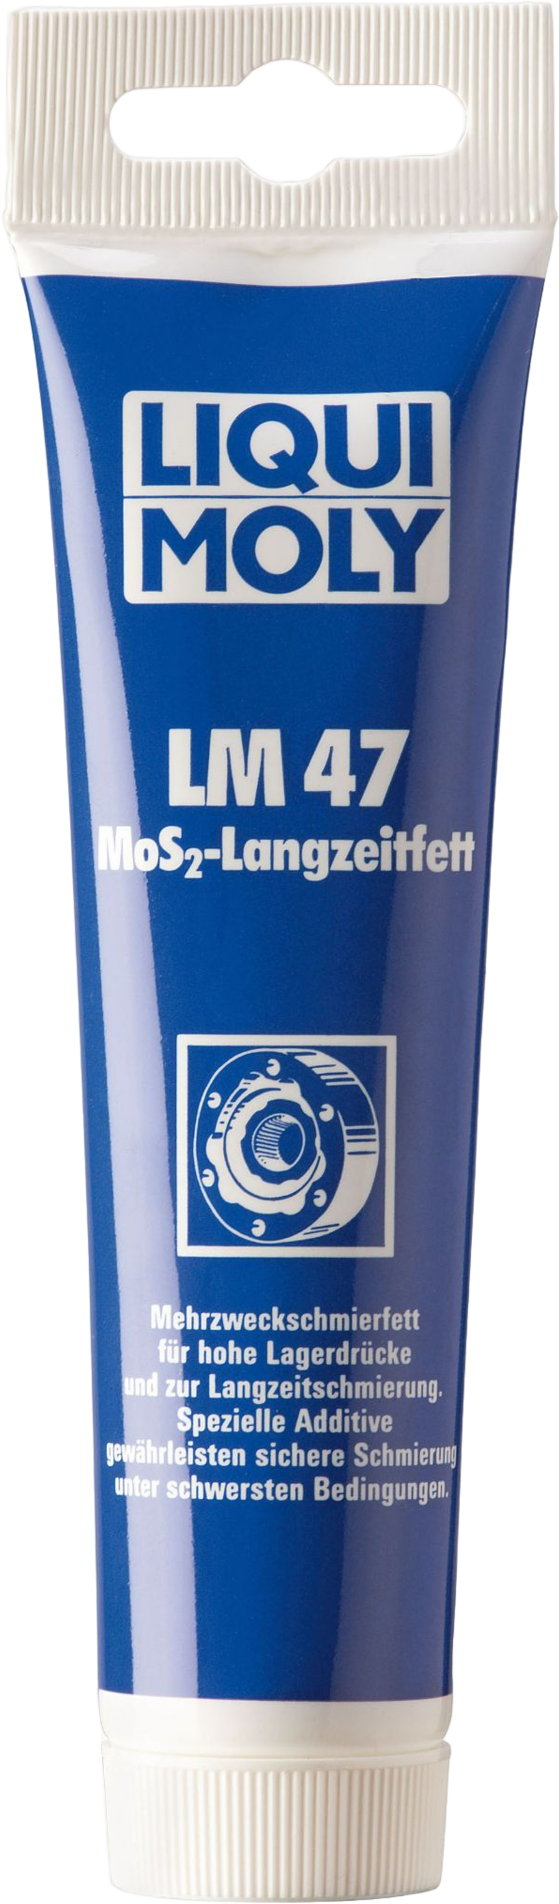 LM3510-100GR Voor de montage, het onderhoud en de herstelling van voertuigen, gereedschap, bouw-, landbouw- en drukmachines.